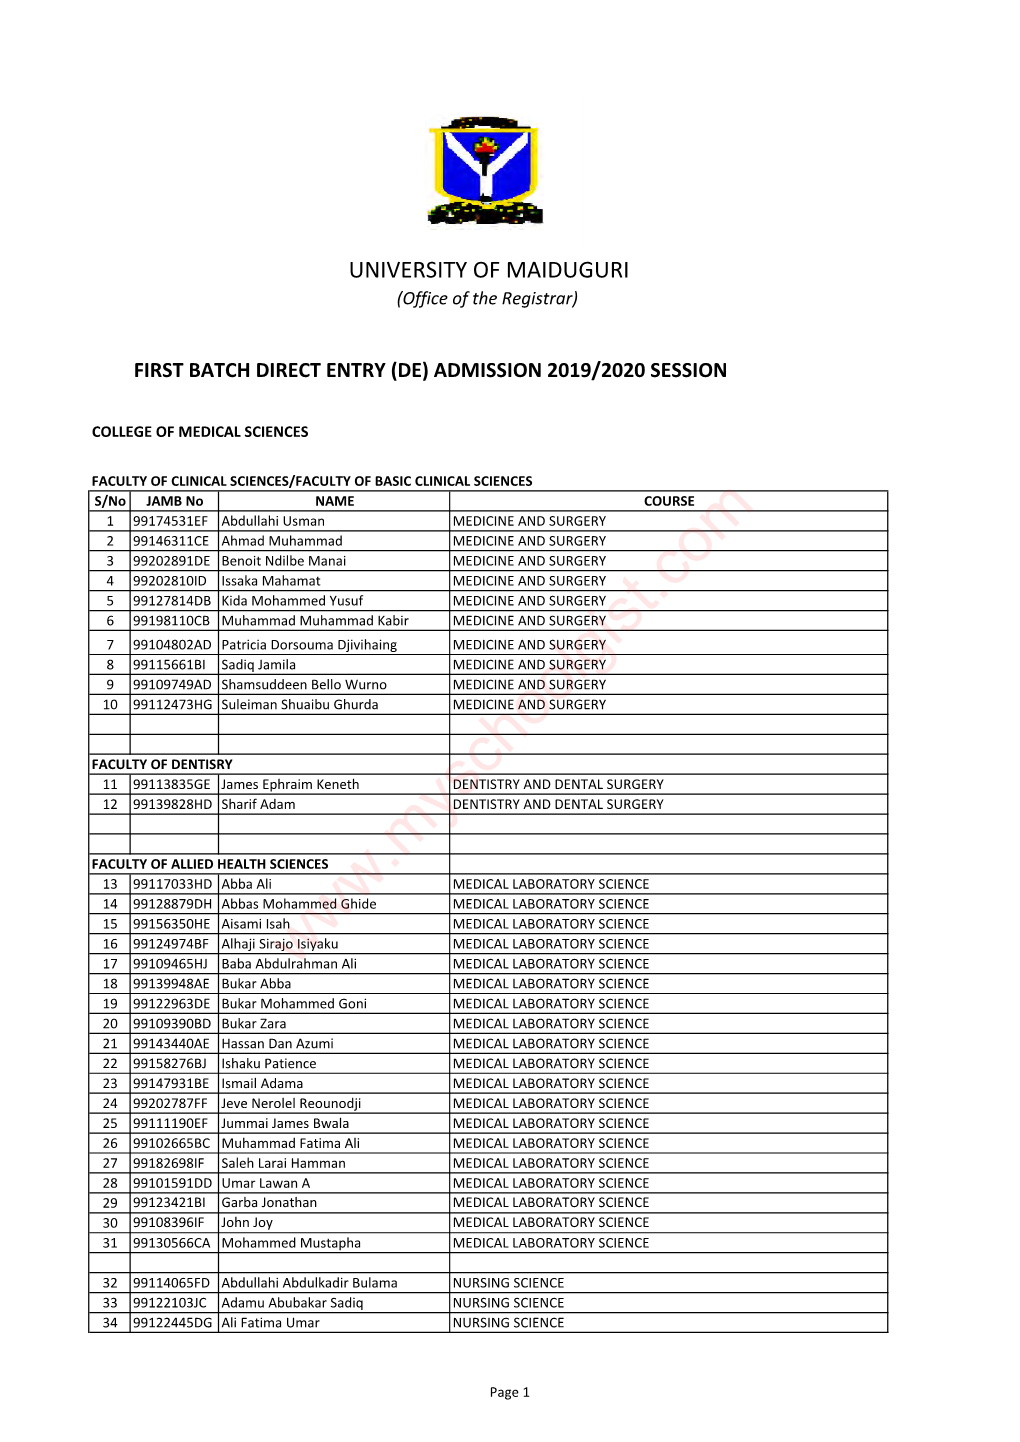 UNIMAID DE 1St Batch Admission List